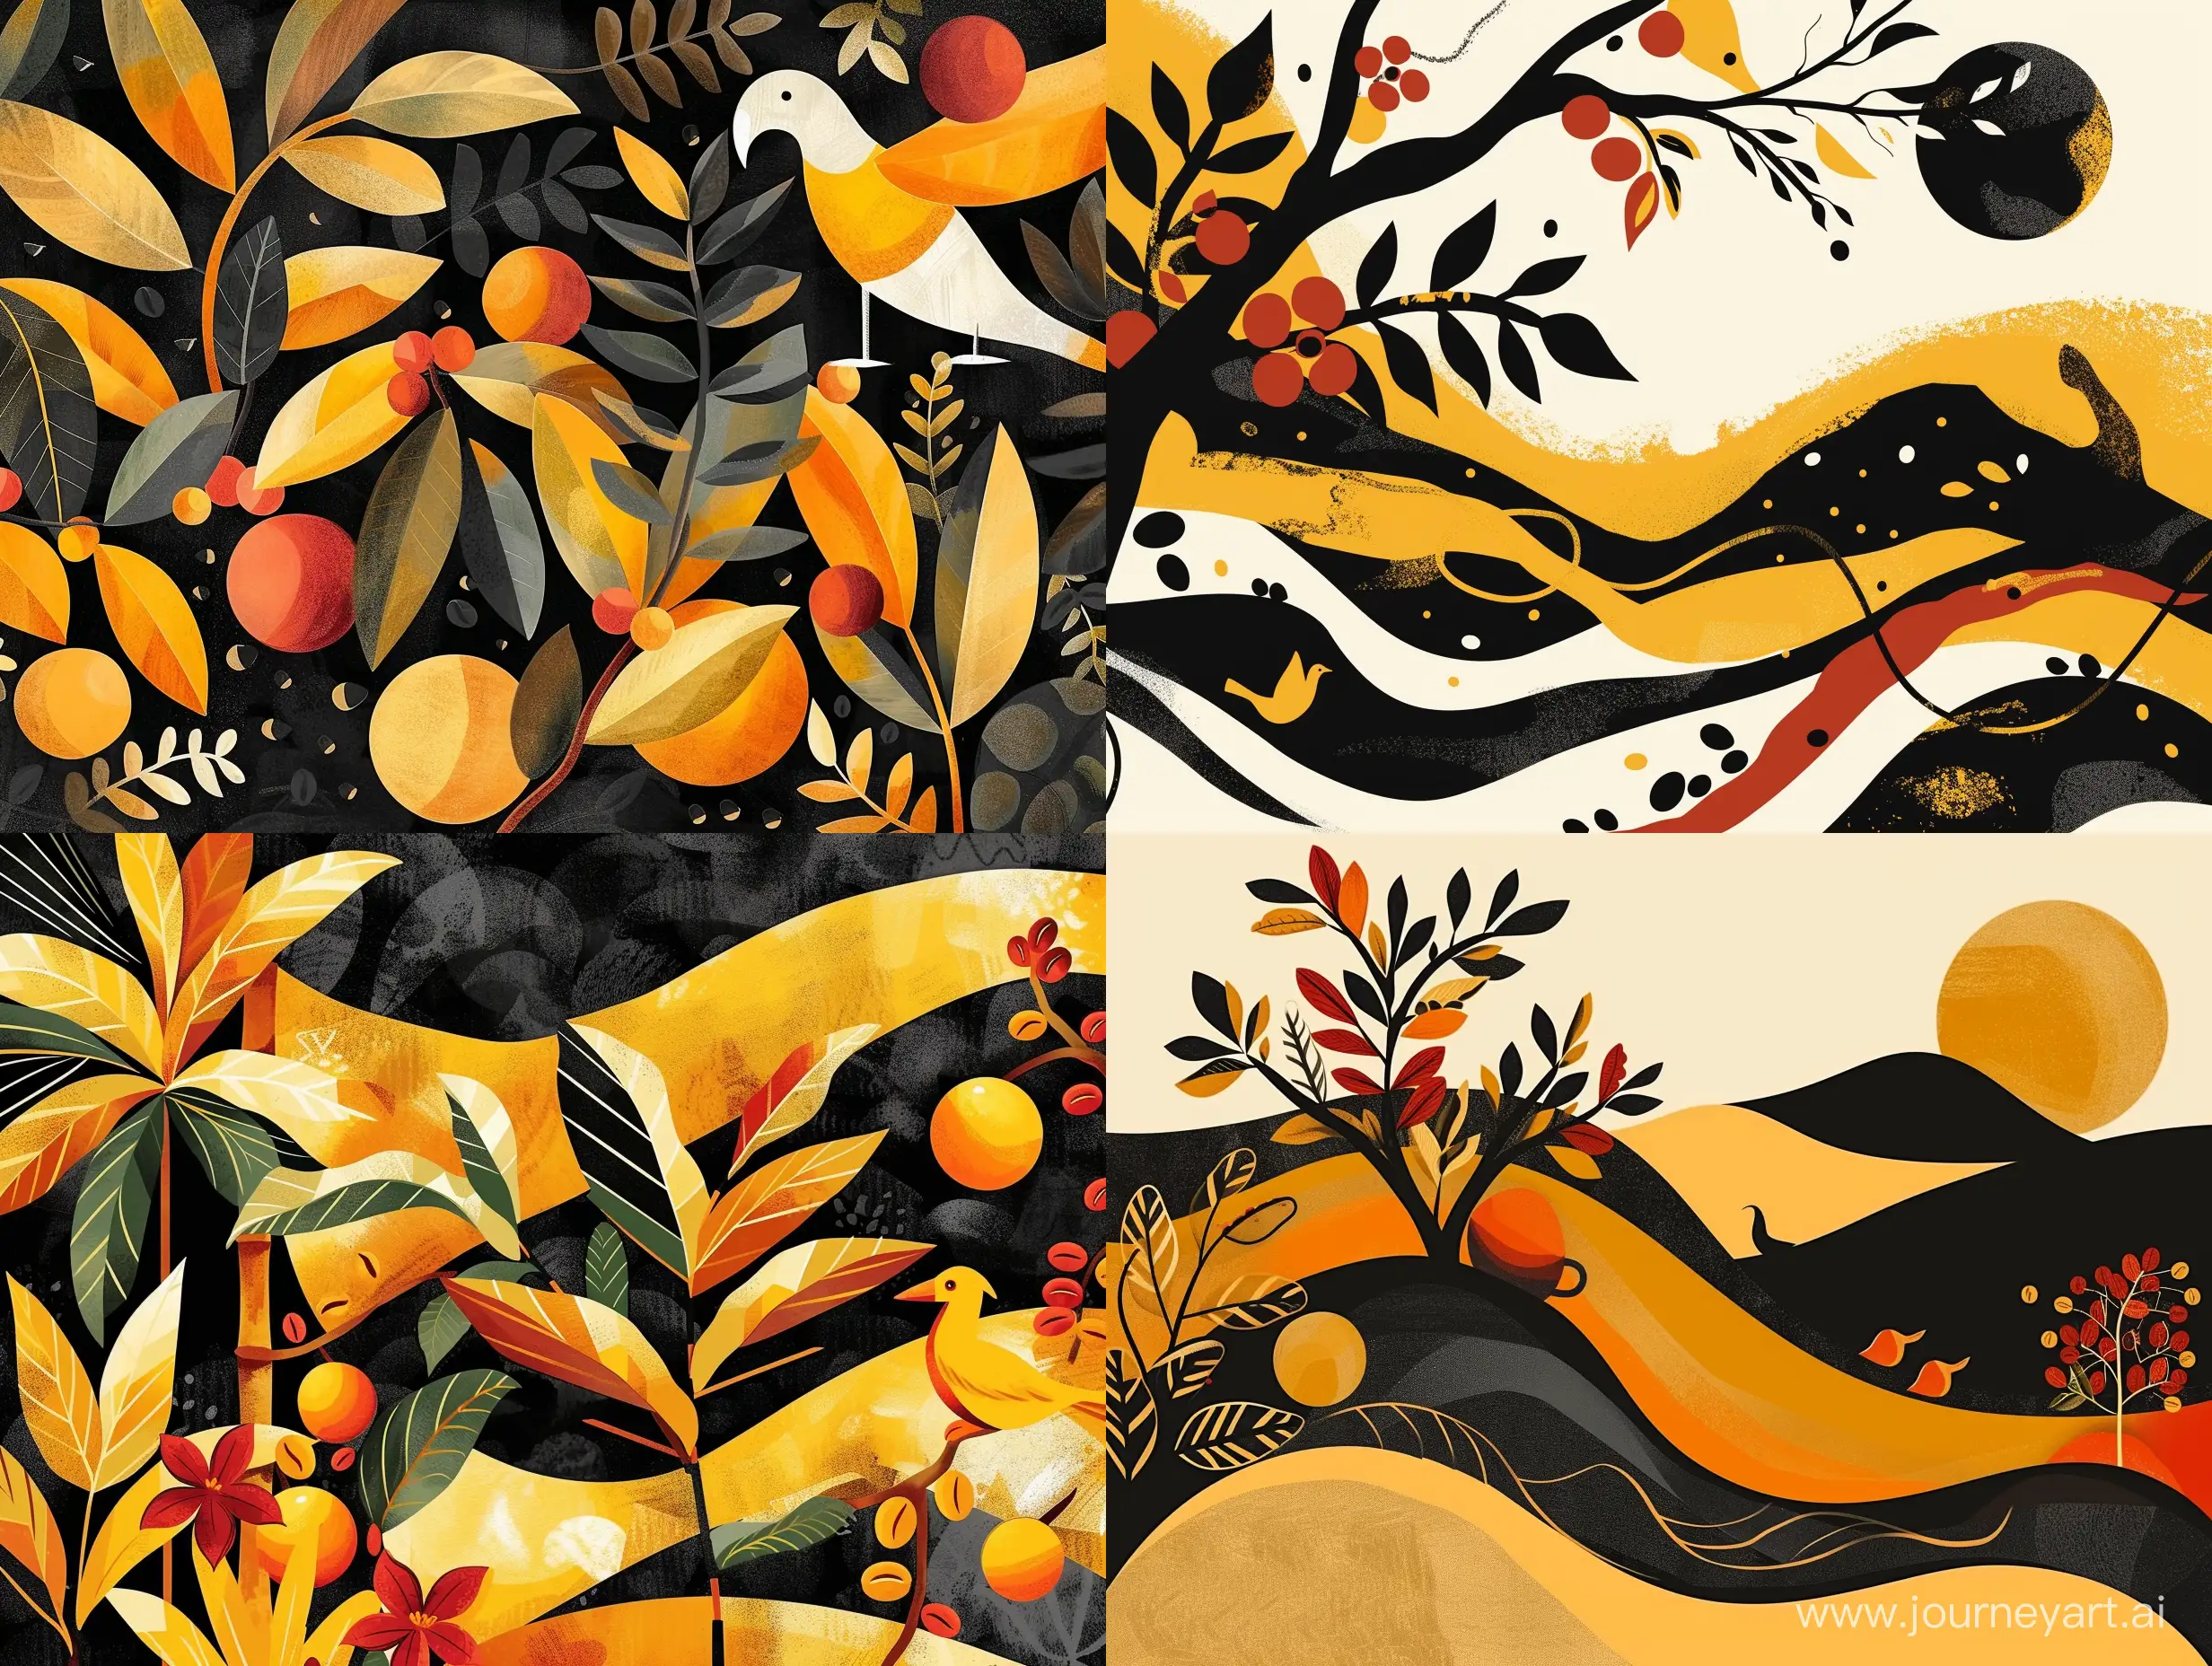 Иллюстрация в стиле современная абстракция плантация кофе, зерна кофе  в Эфиопии, природа, животные, птицы, растения, кофе Эфиопии в черных, желтых, оранжевых, коричневых цветах